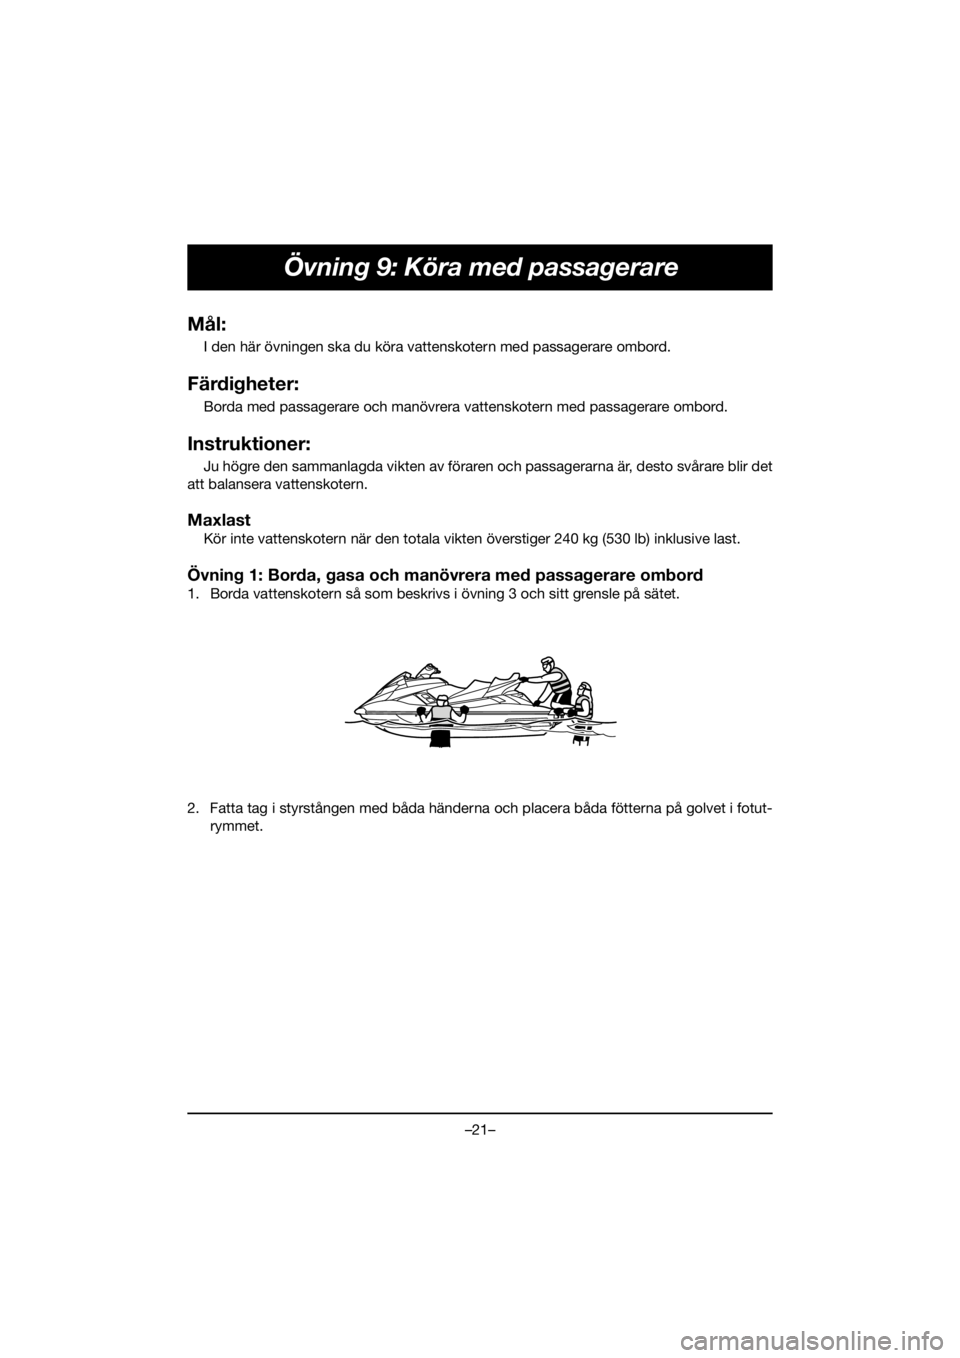 YAMAHA FX HO 2020  Manuale de Empleo (in Spanish) –21–
Övning 9: Köra med passagerare
Mål:
I den här övningen ska du köra vattenskotern med passagerare ombord.
Färdigheter:
Borda med passagerare och manövrera vattenskotern med passagerare